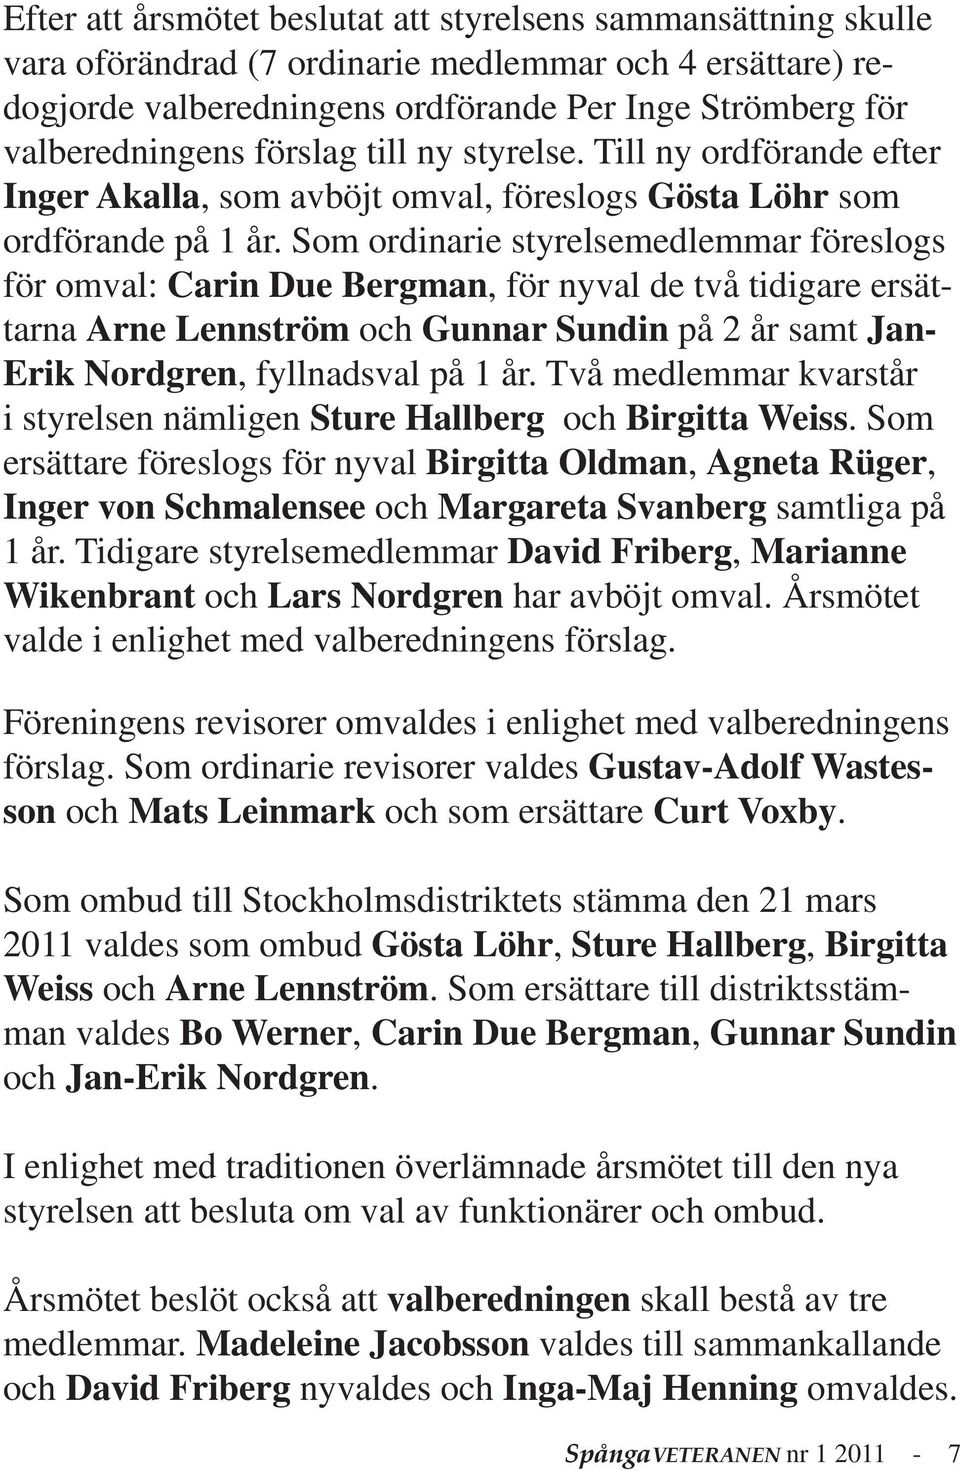 Som ordinarie styrelsemedlemmar föreslogs för omval: Carin Due Bergman, för nyval de två tidigare ersättarna Arne Lennström och Gunnar Sundin på 2 år samt Jan- Erik Nordgren, fyllnadsval på 1 år.